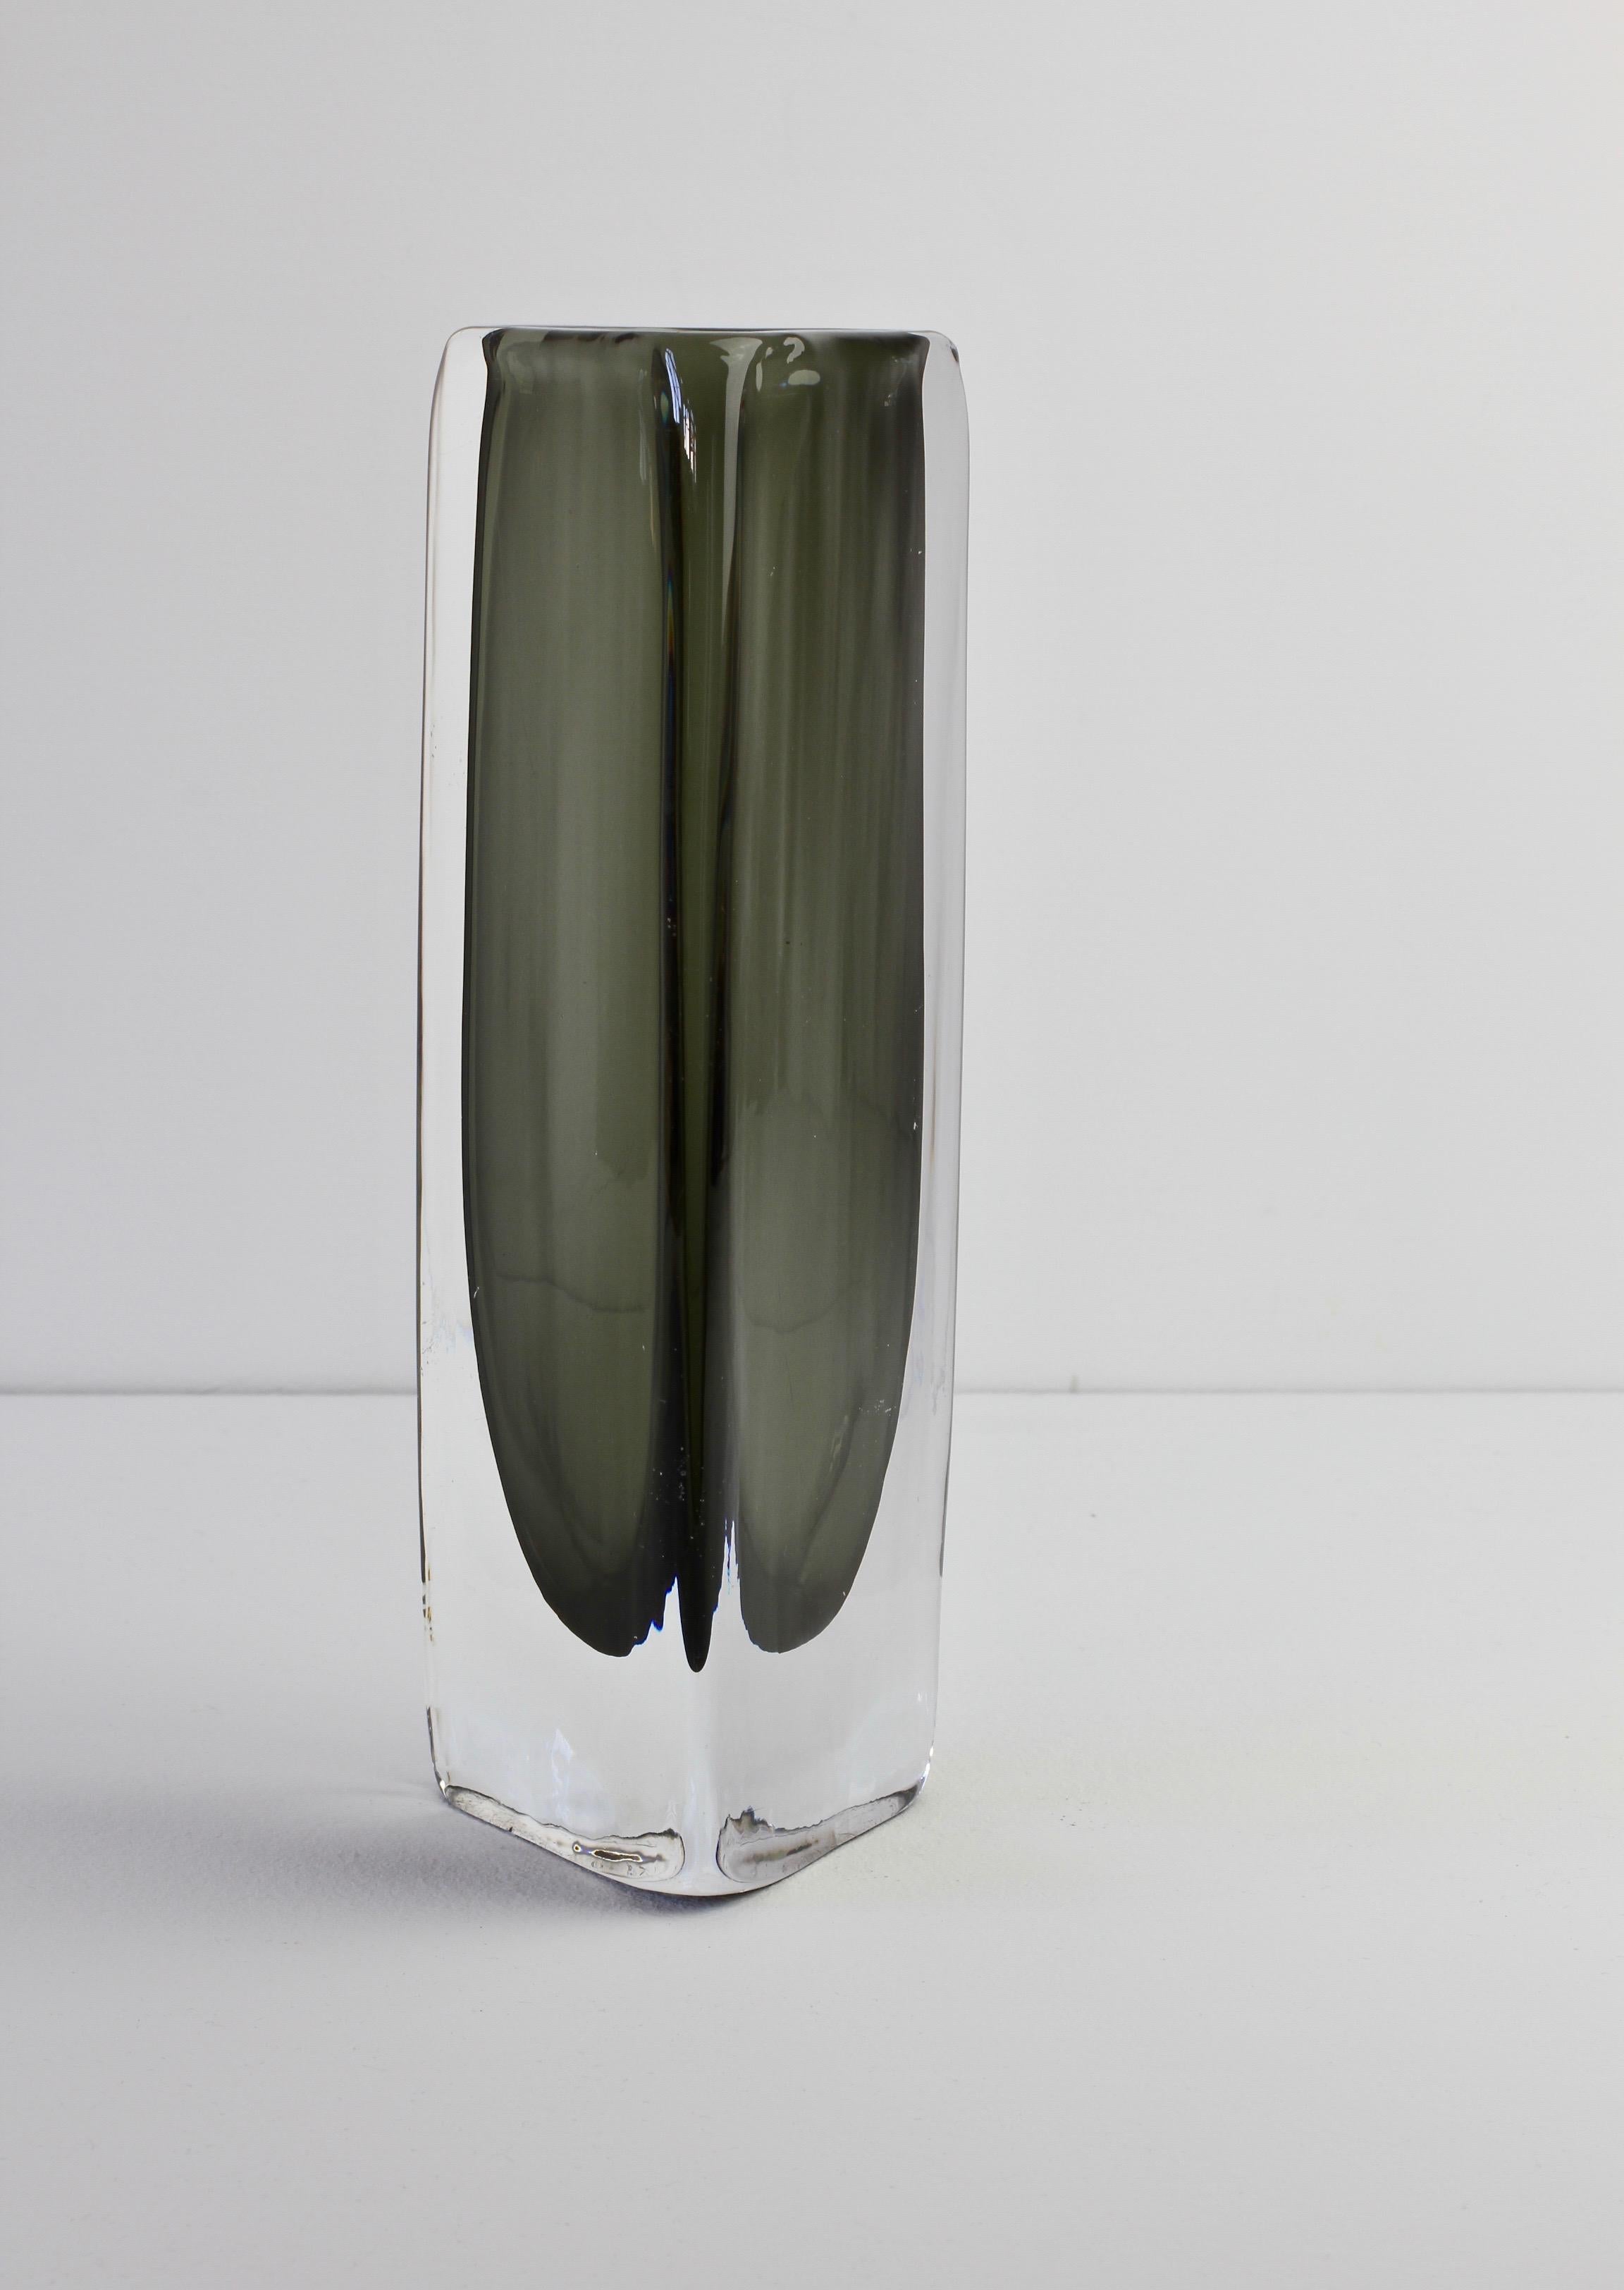 Suédois Grand vase en verre Sommerso des années 1950 signé Nils Landberg pour Orrefors Glass en vente